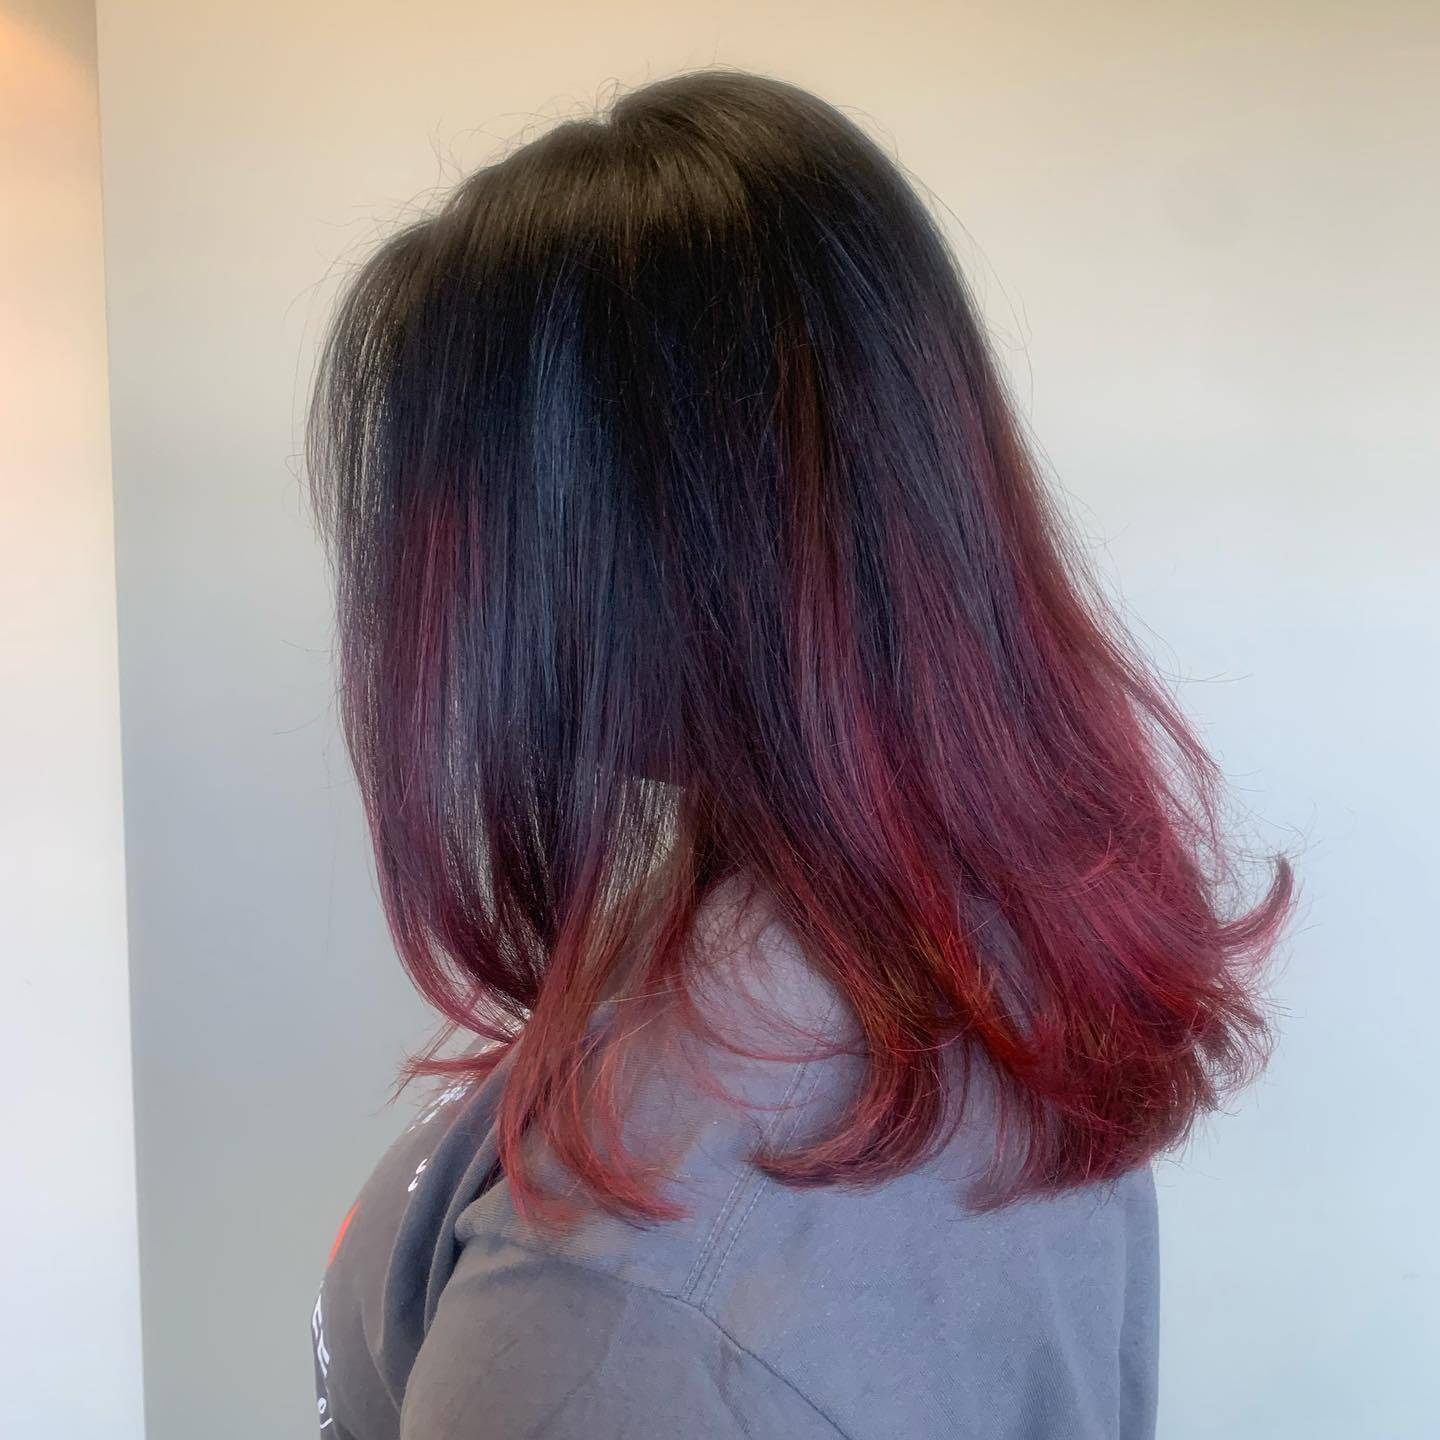 Burgundy hair color 221 burgundy hair color | burgundy hair color for women | burgundy hair color highlights Burgundy Hair Color